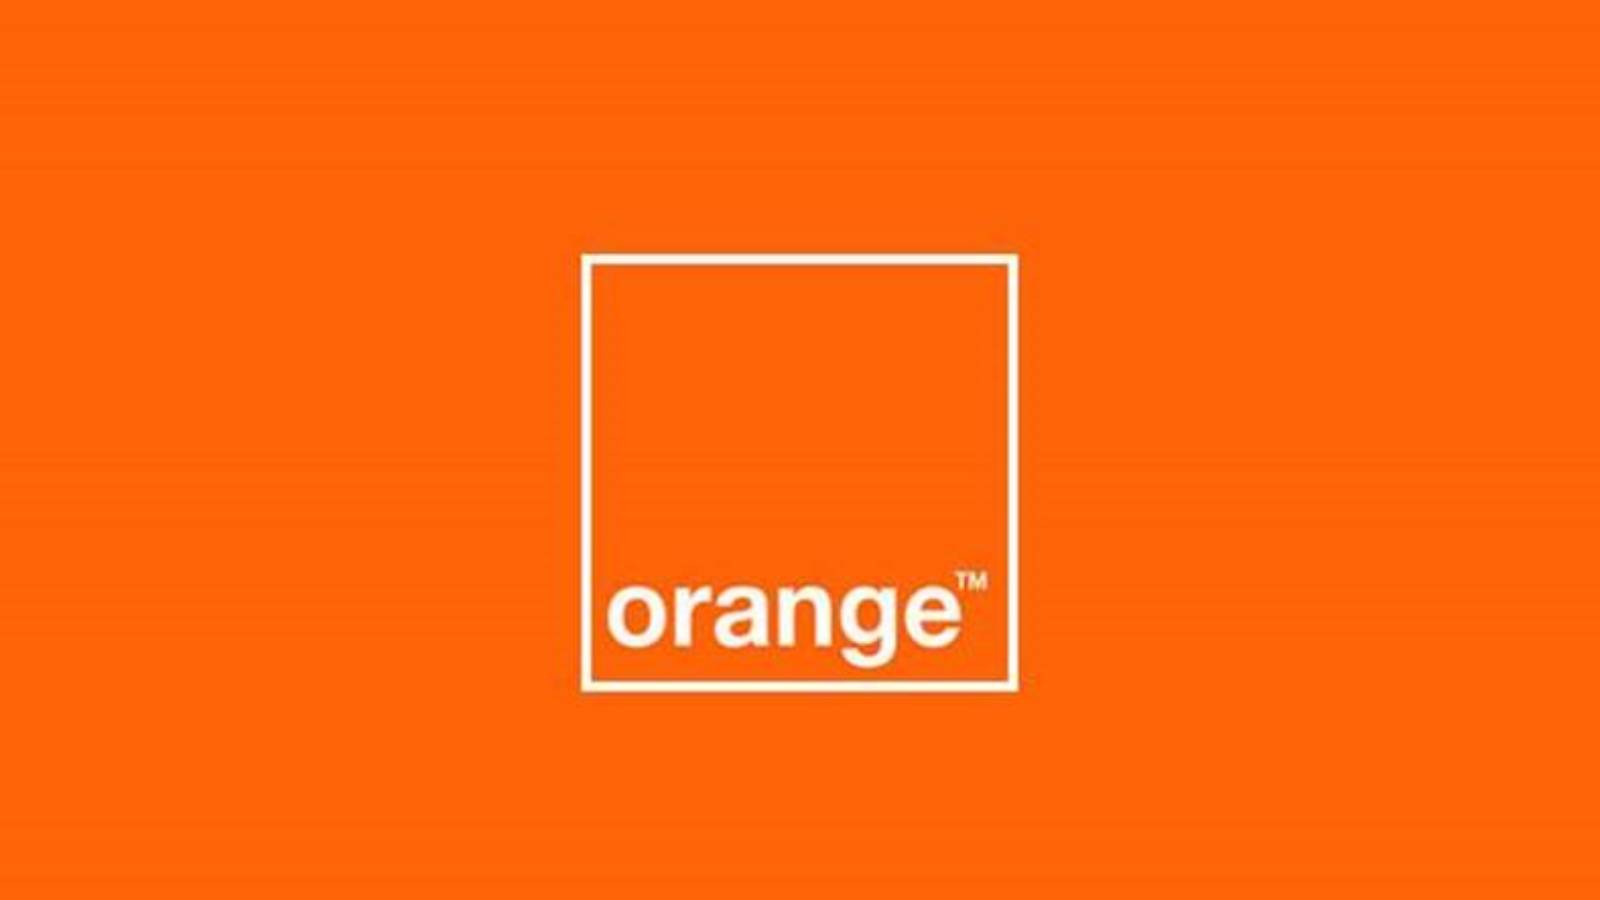 Orange officielle mål LAST MINUTE GRATIS for rumænske kunder